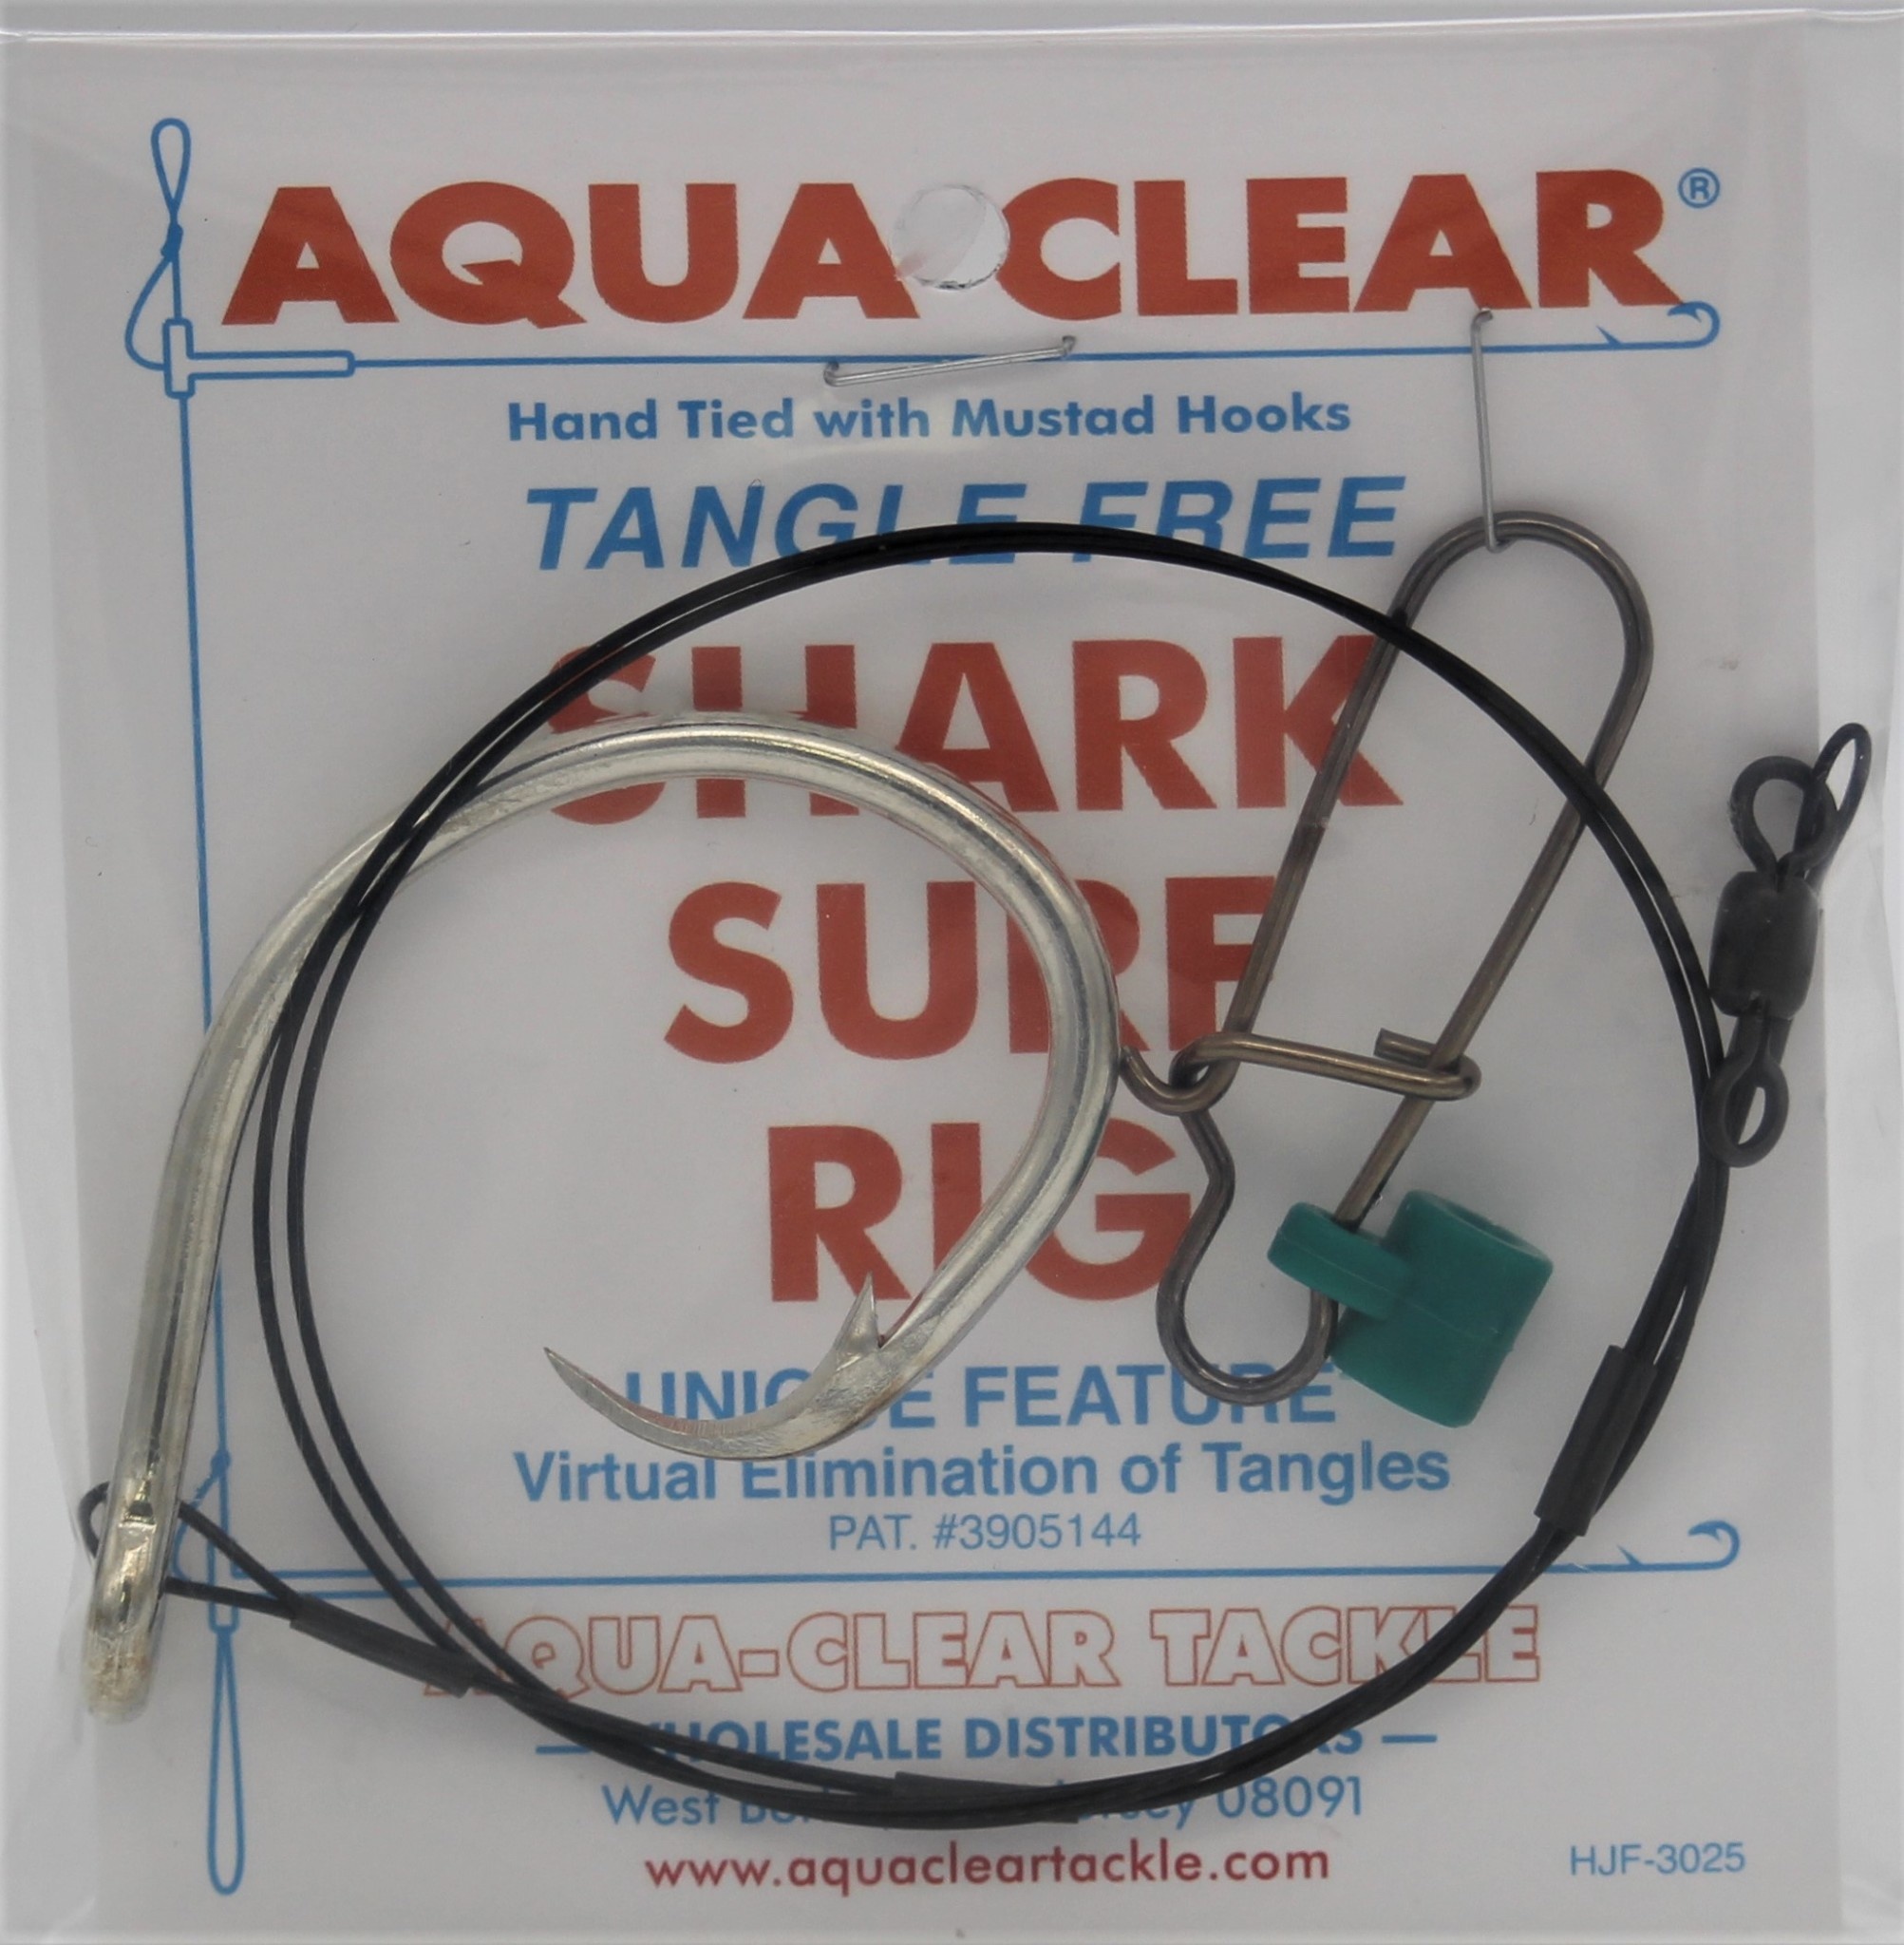 Aqua Clear Aqua-Clear Shark Circle Hook Surf Rigs w/90lb Wire